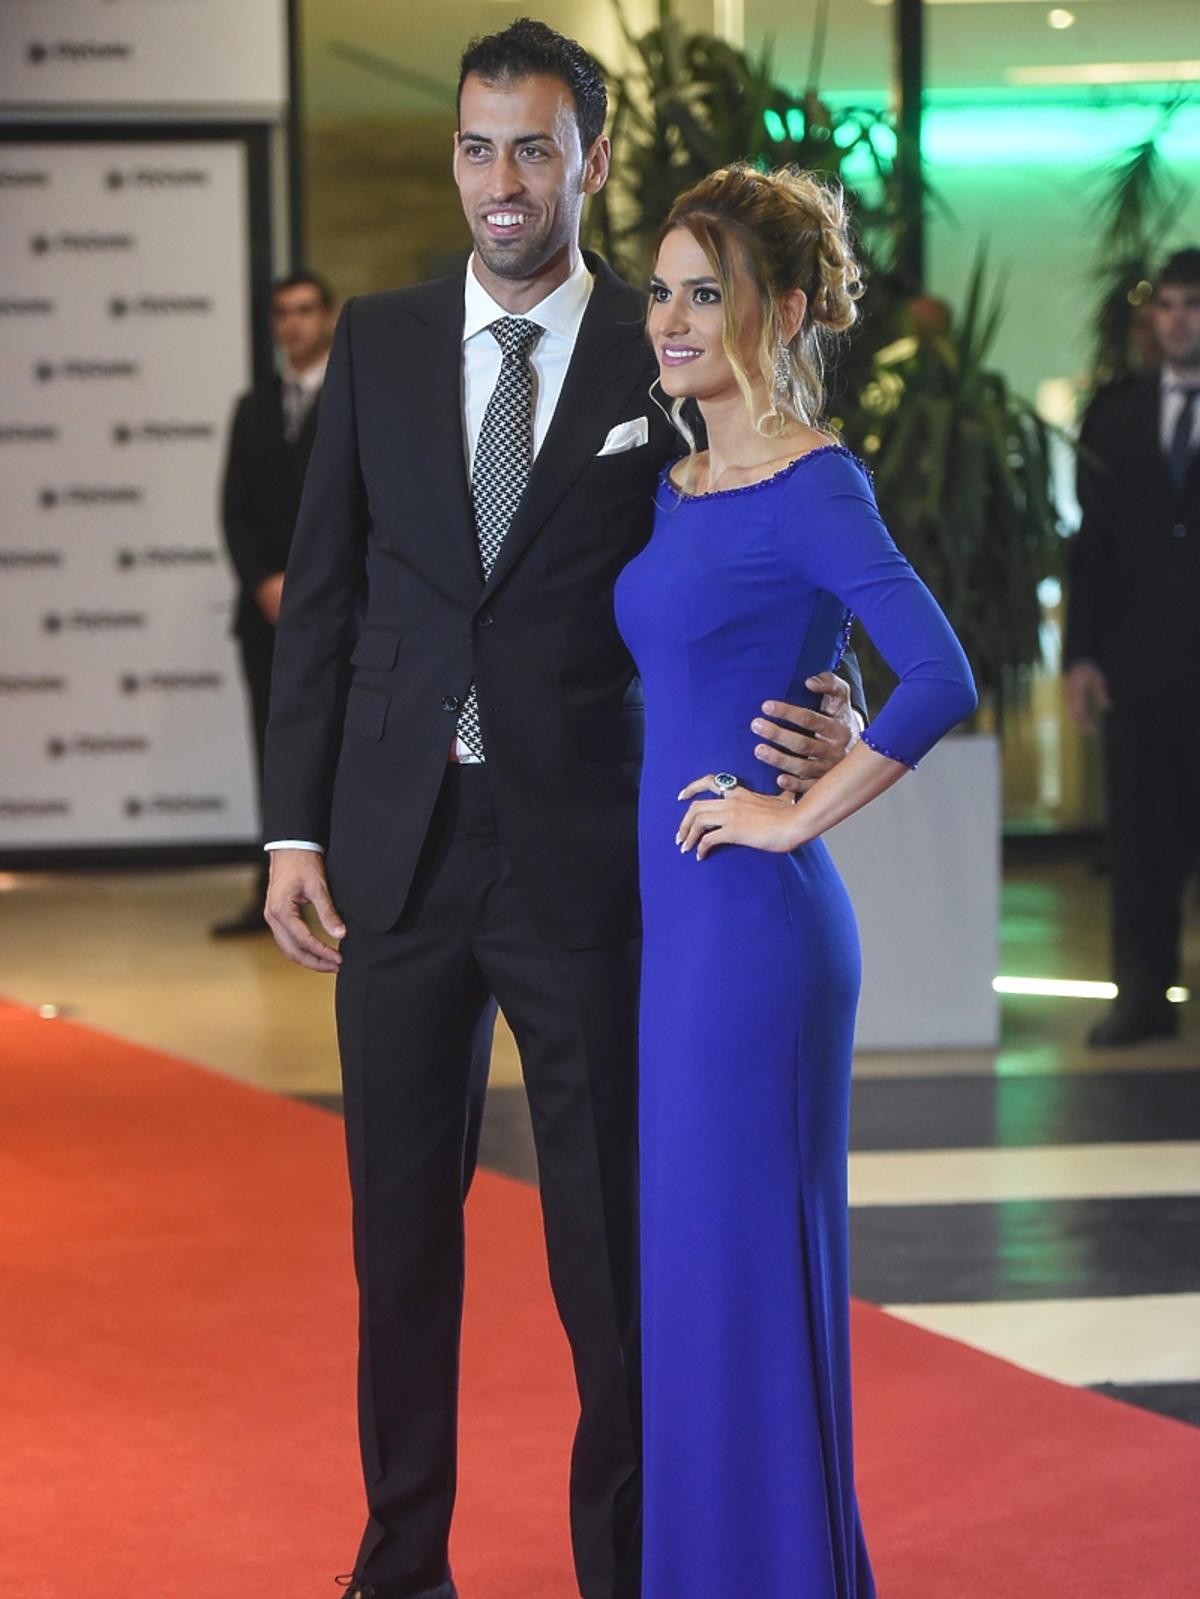 Sergio Busquets z żoną na weselu u państwa Messi